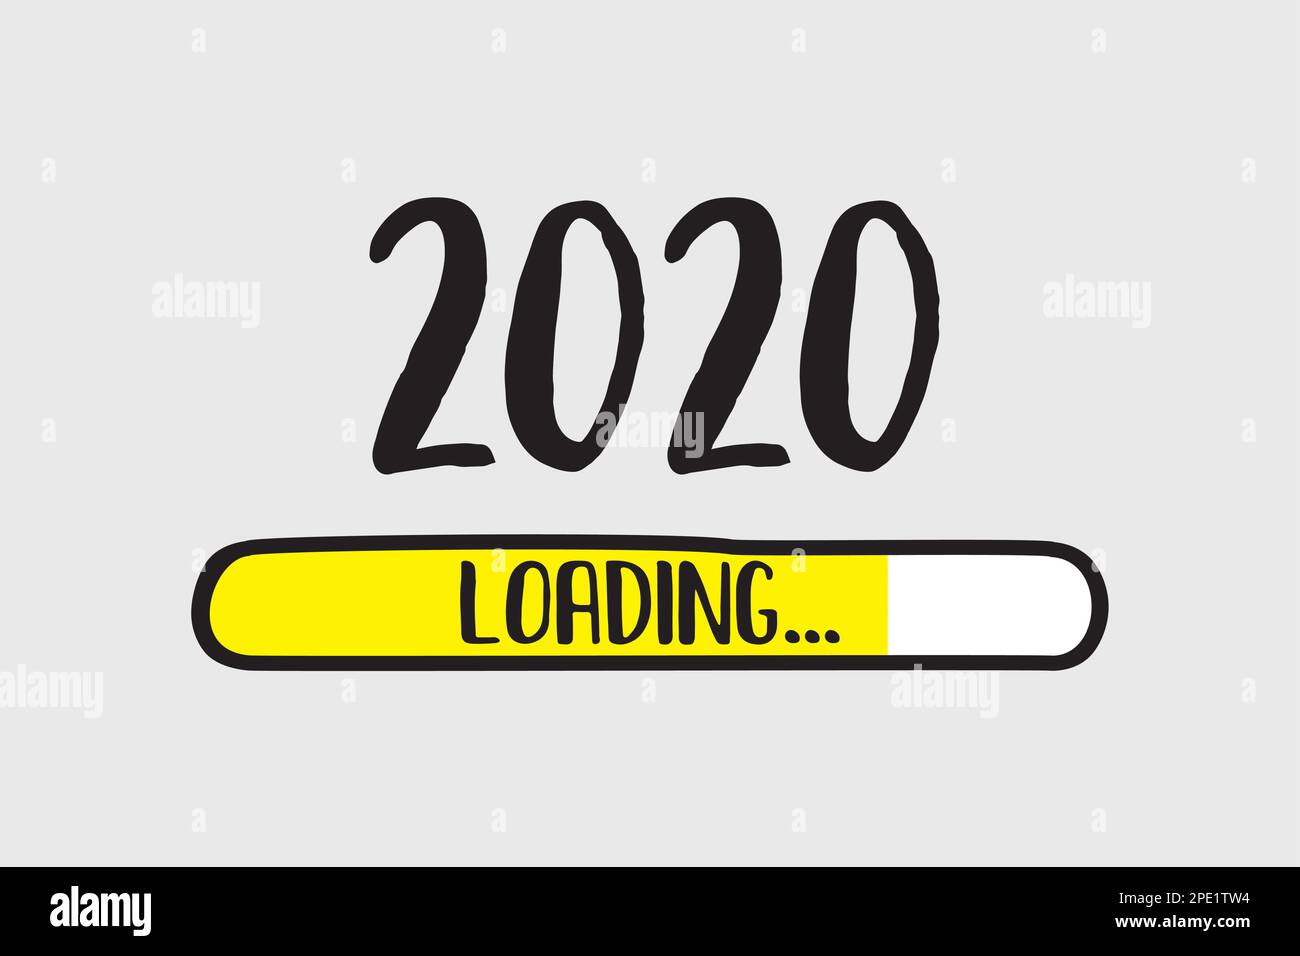 Barre de téléchargement jaune Doodle,2020 chargement du texte. Modèle de page Web. illustration vectorielle Illustration de Vecteur